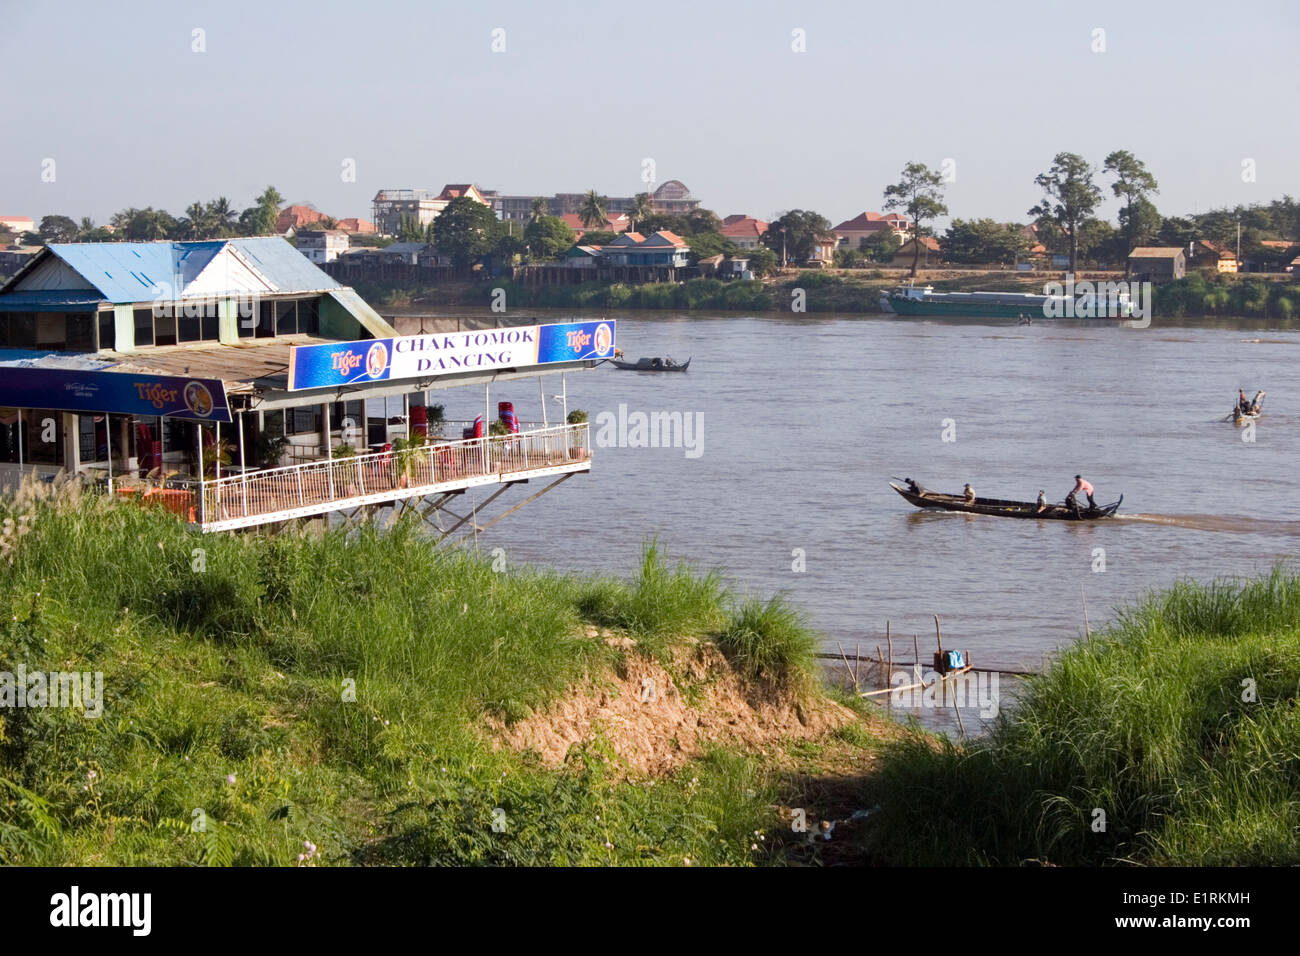 La Chak Tomok Dance Club repose au-dessus du littoral de la rivière du Mékong à Phnom Penh, Cambodge. Banque D'Images